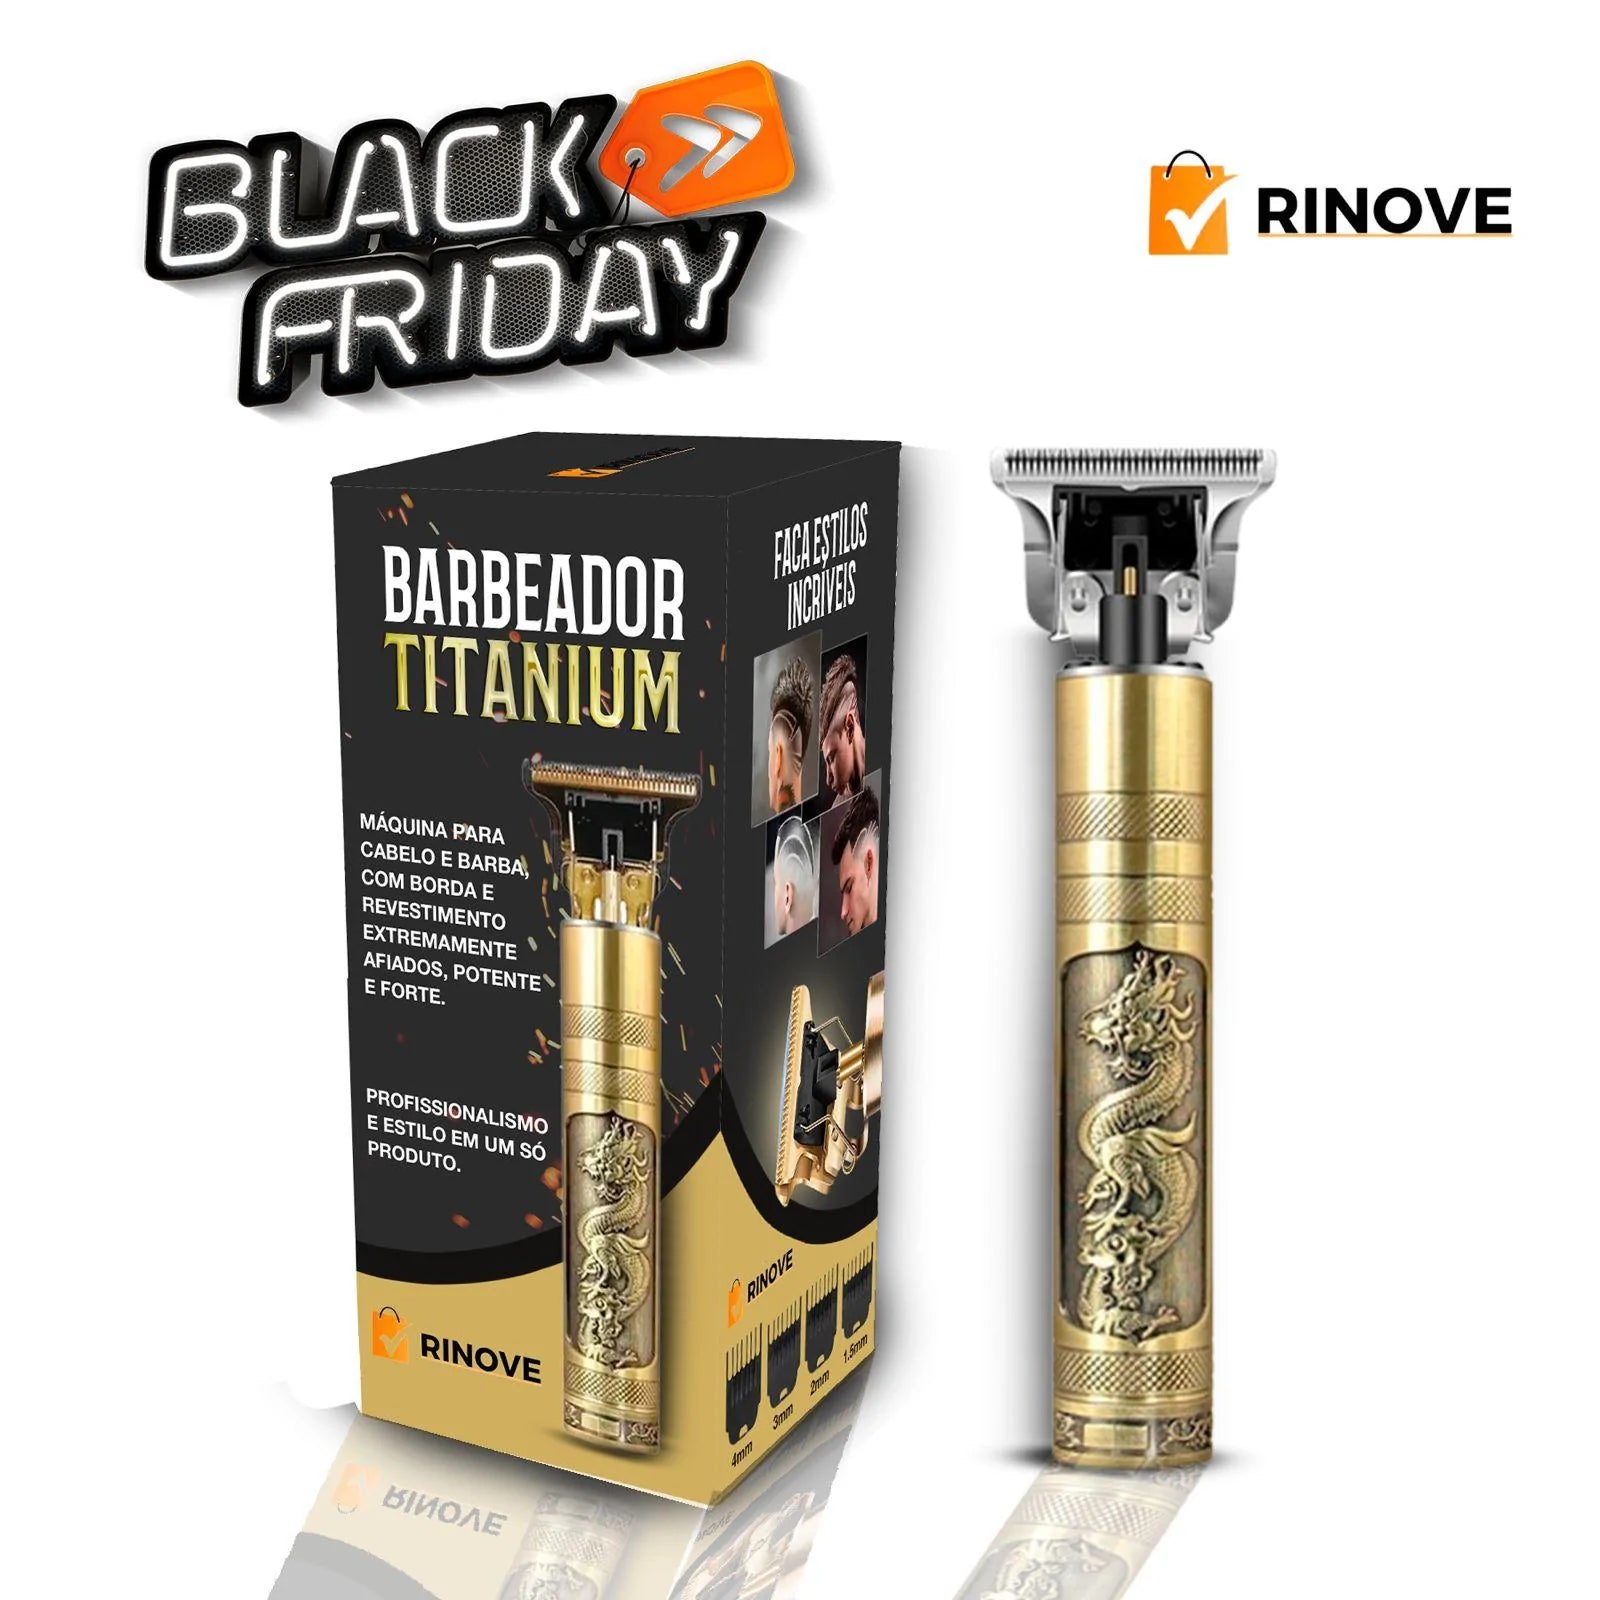 Barbeador Masculino Titanium© com 4 Pentes + BRINDE (3.0) - Rinove Store